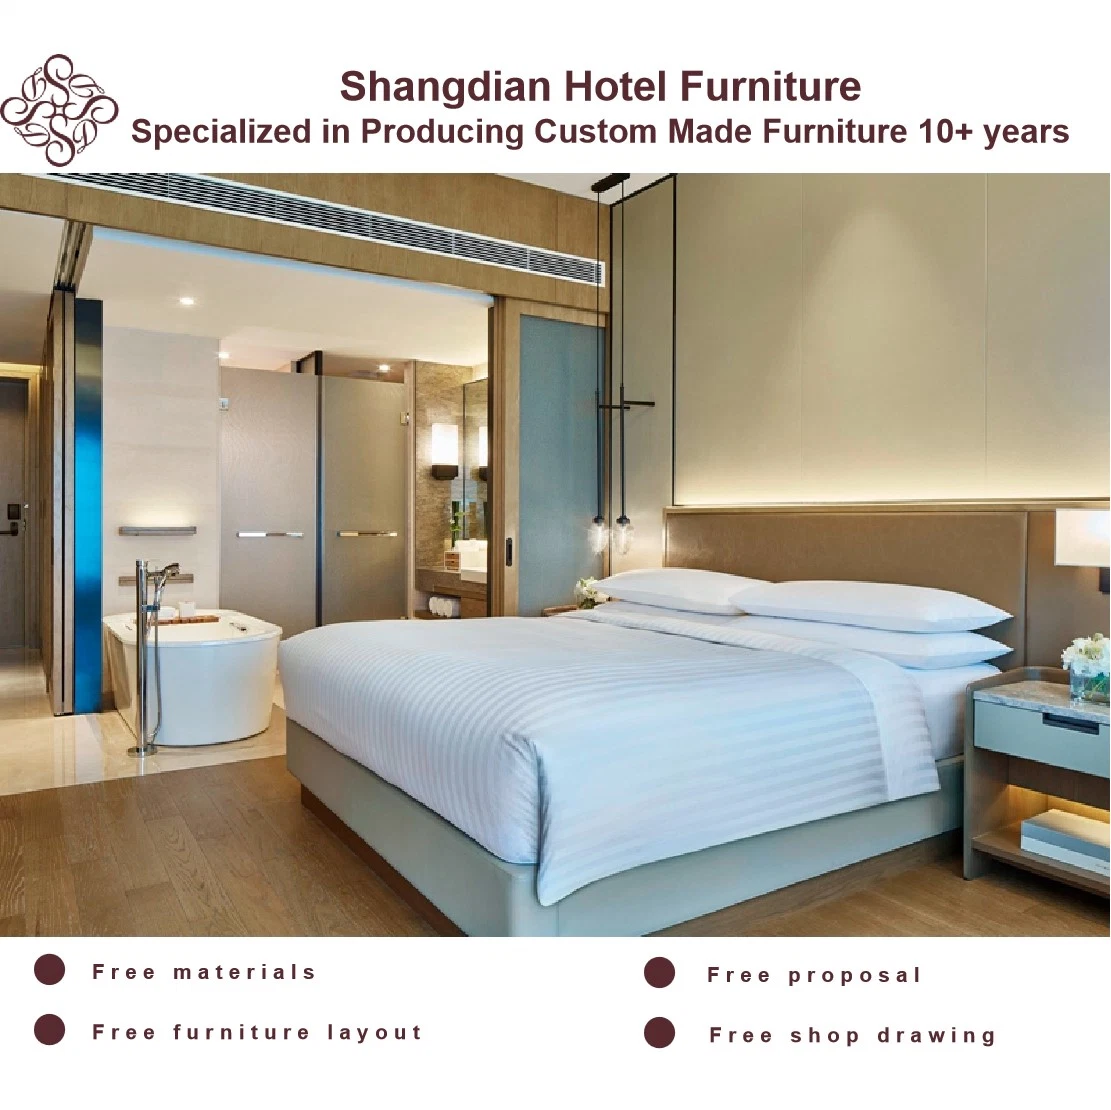 Mobilier de chambre d'hôtel, de villa, d'appartement et de salon moderne chinois 5 étoiles.